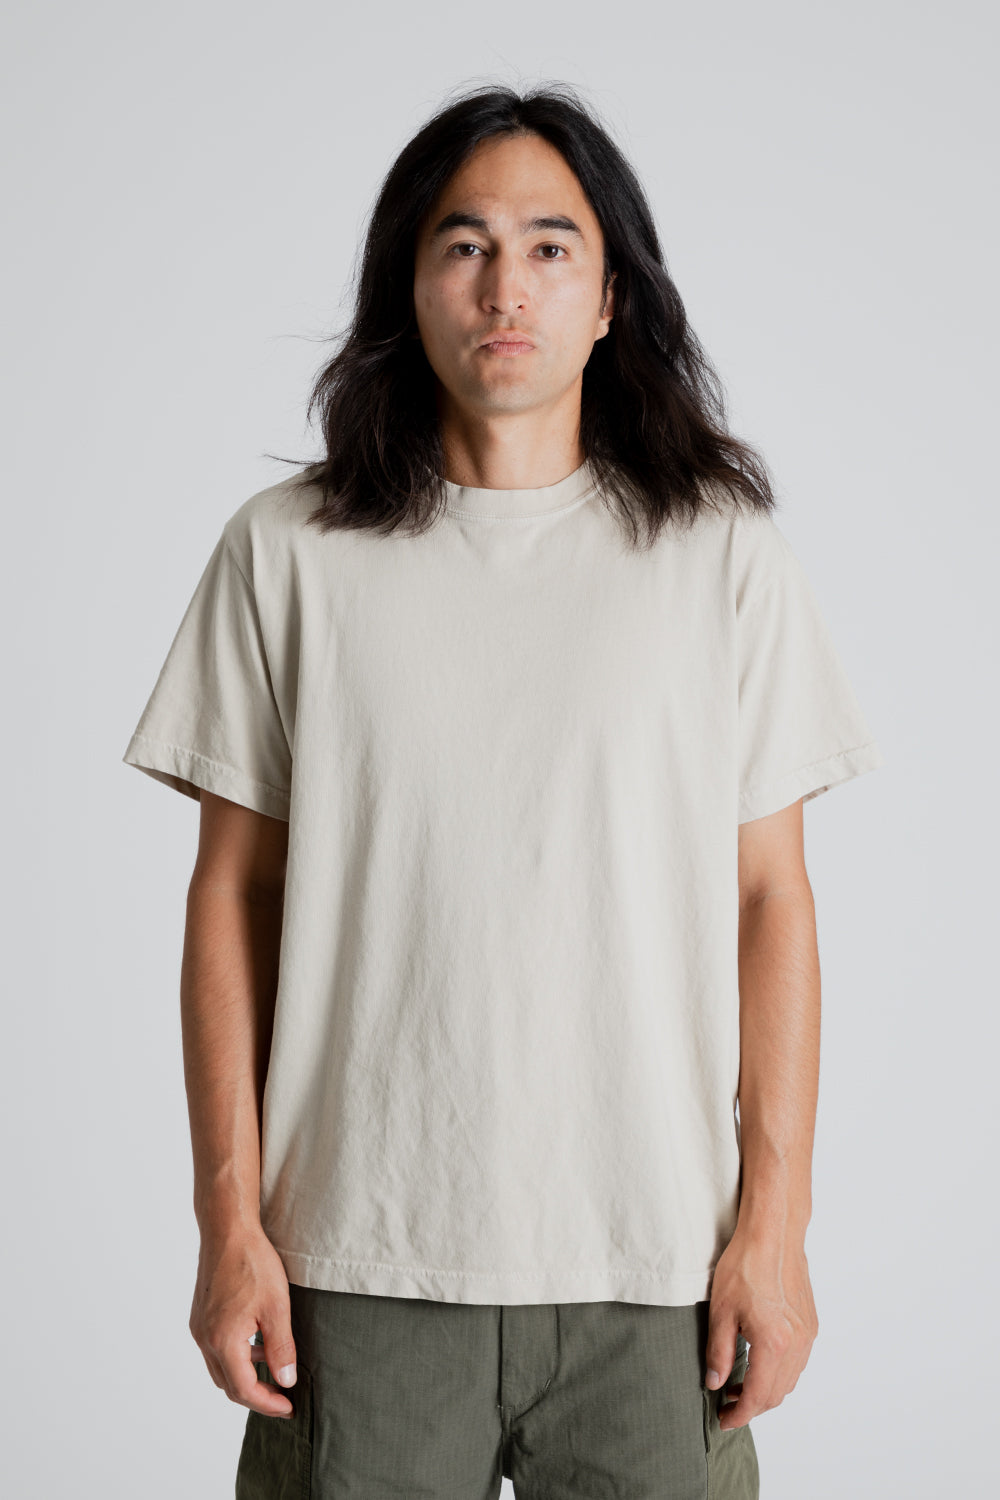 Sunspel classic T-shirt shoulder - IetpShops shop online - Louis